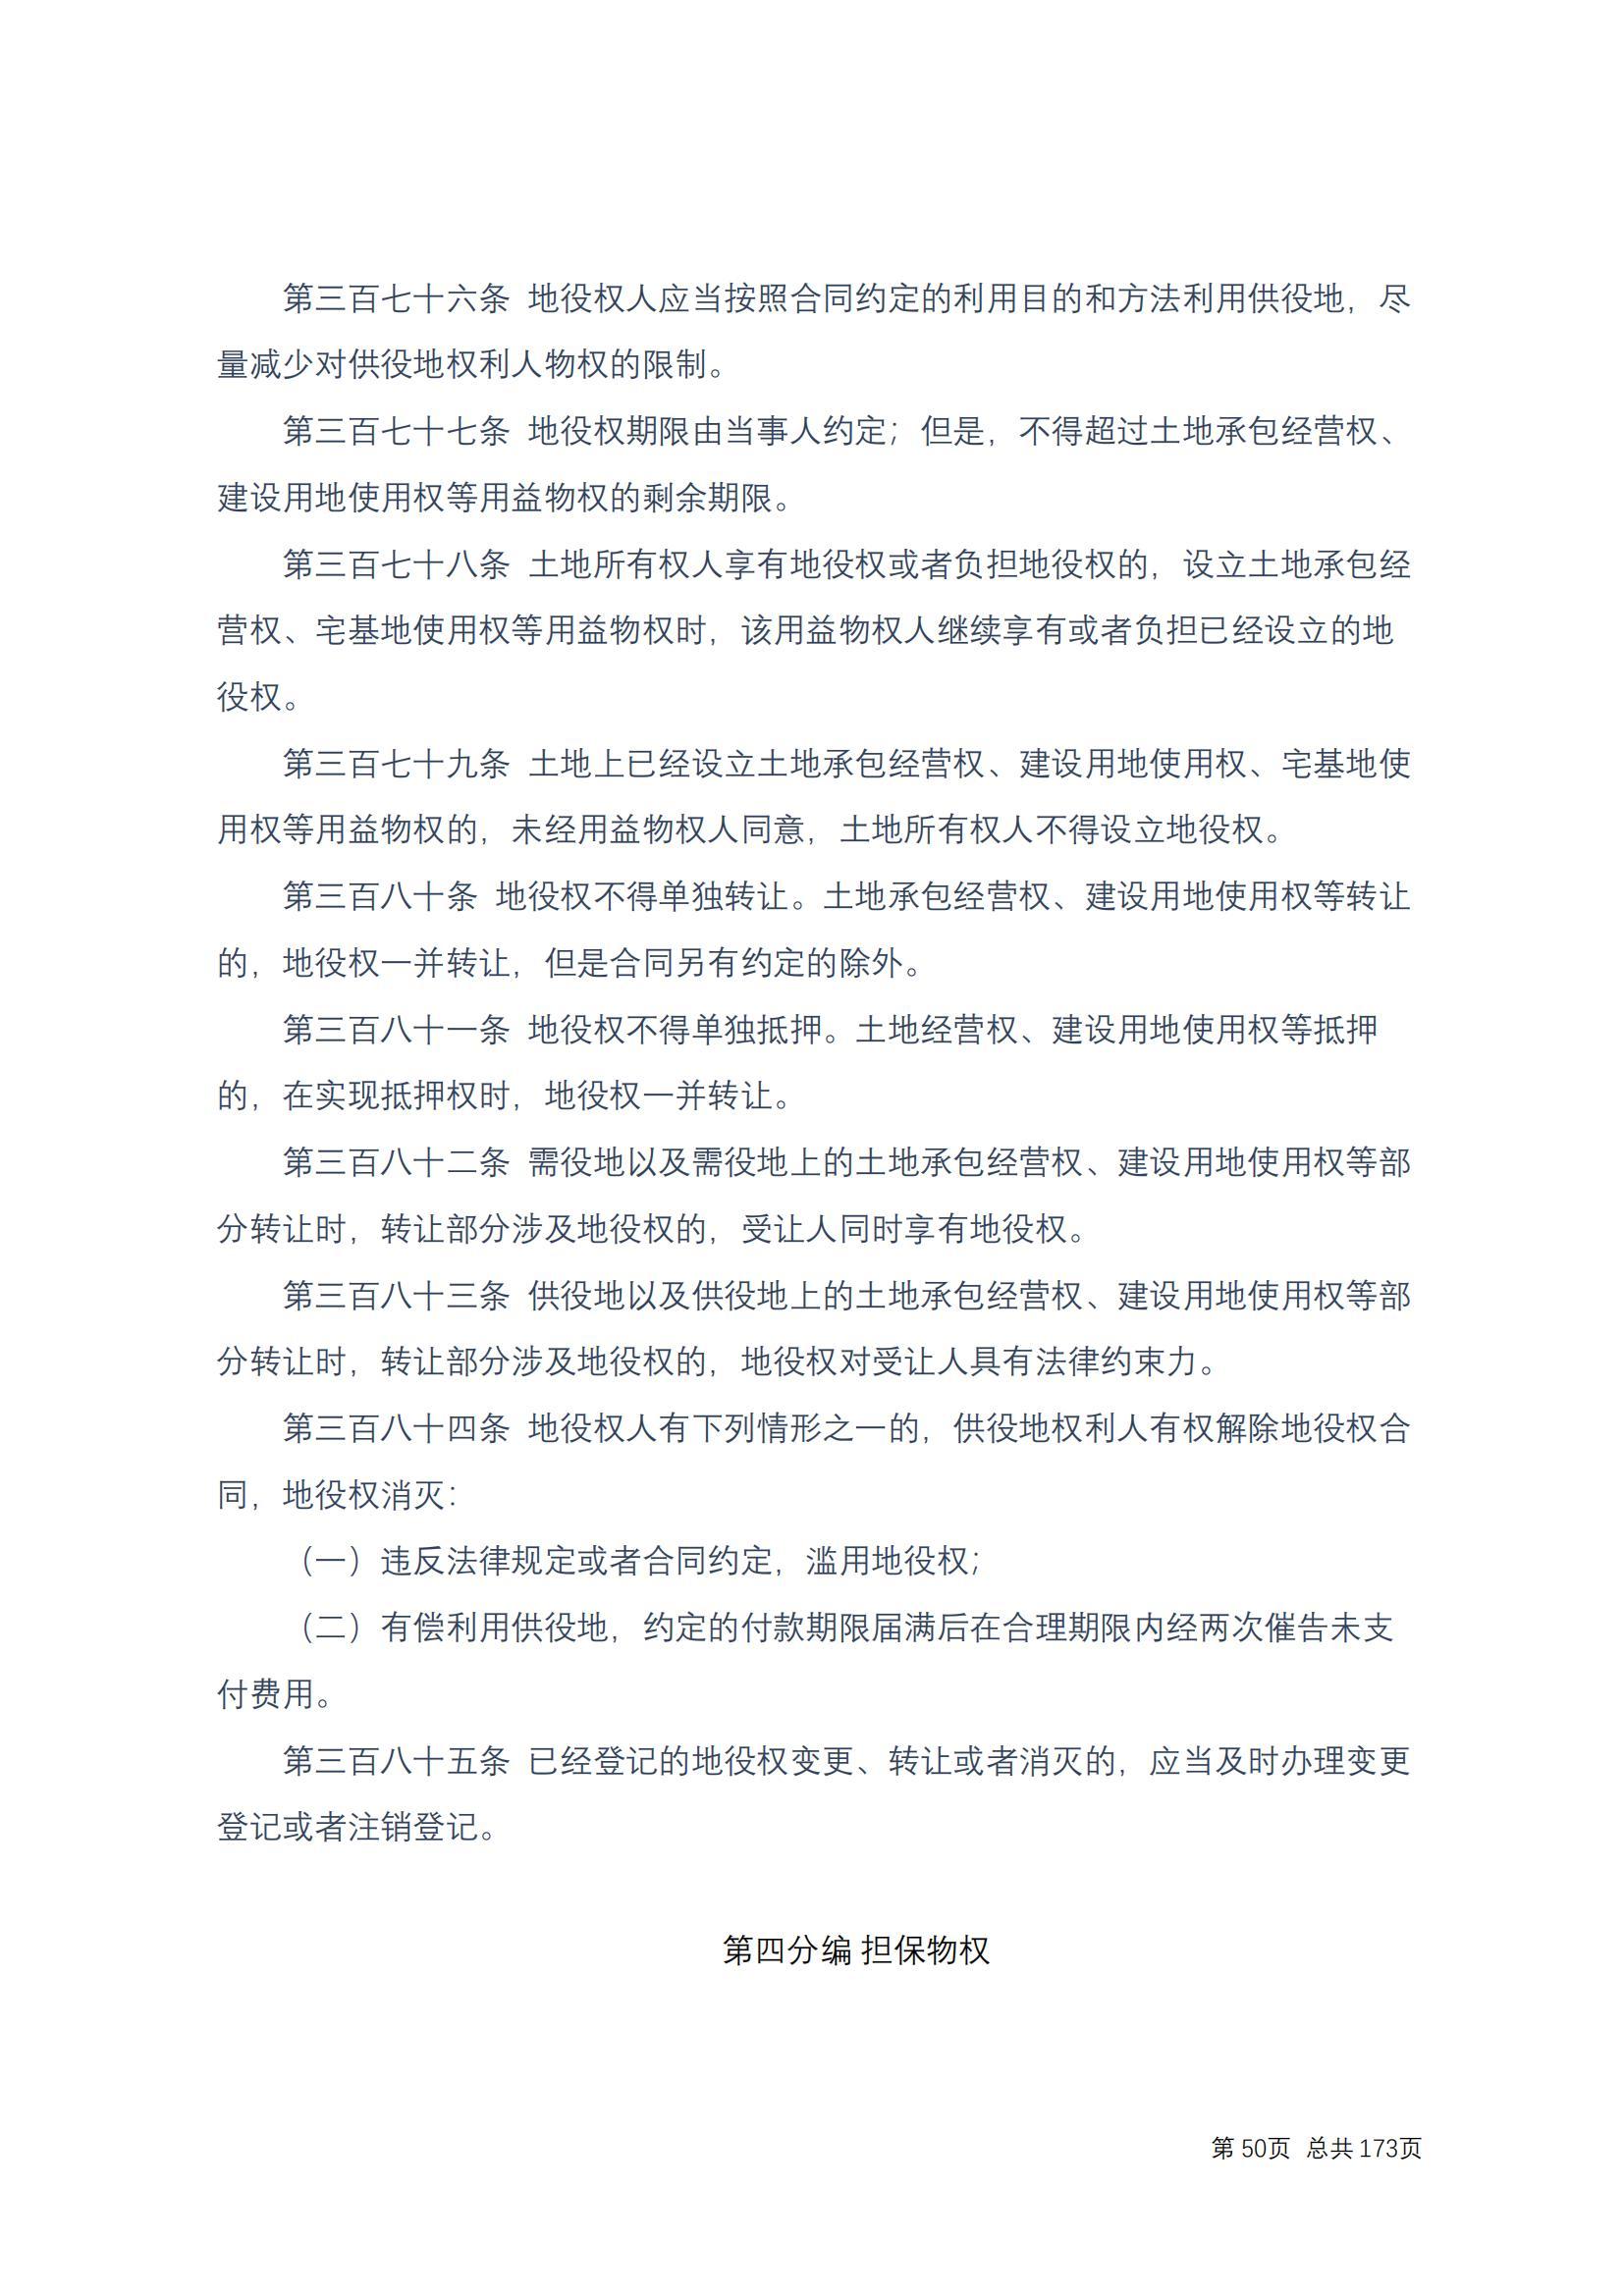 中华人民共和国民法典 修改过_49